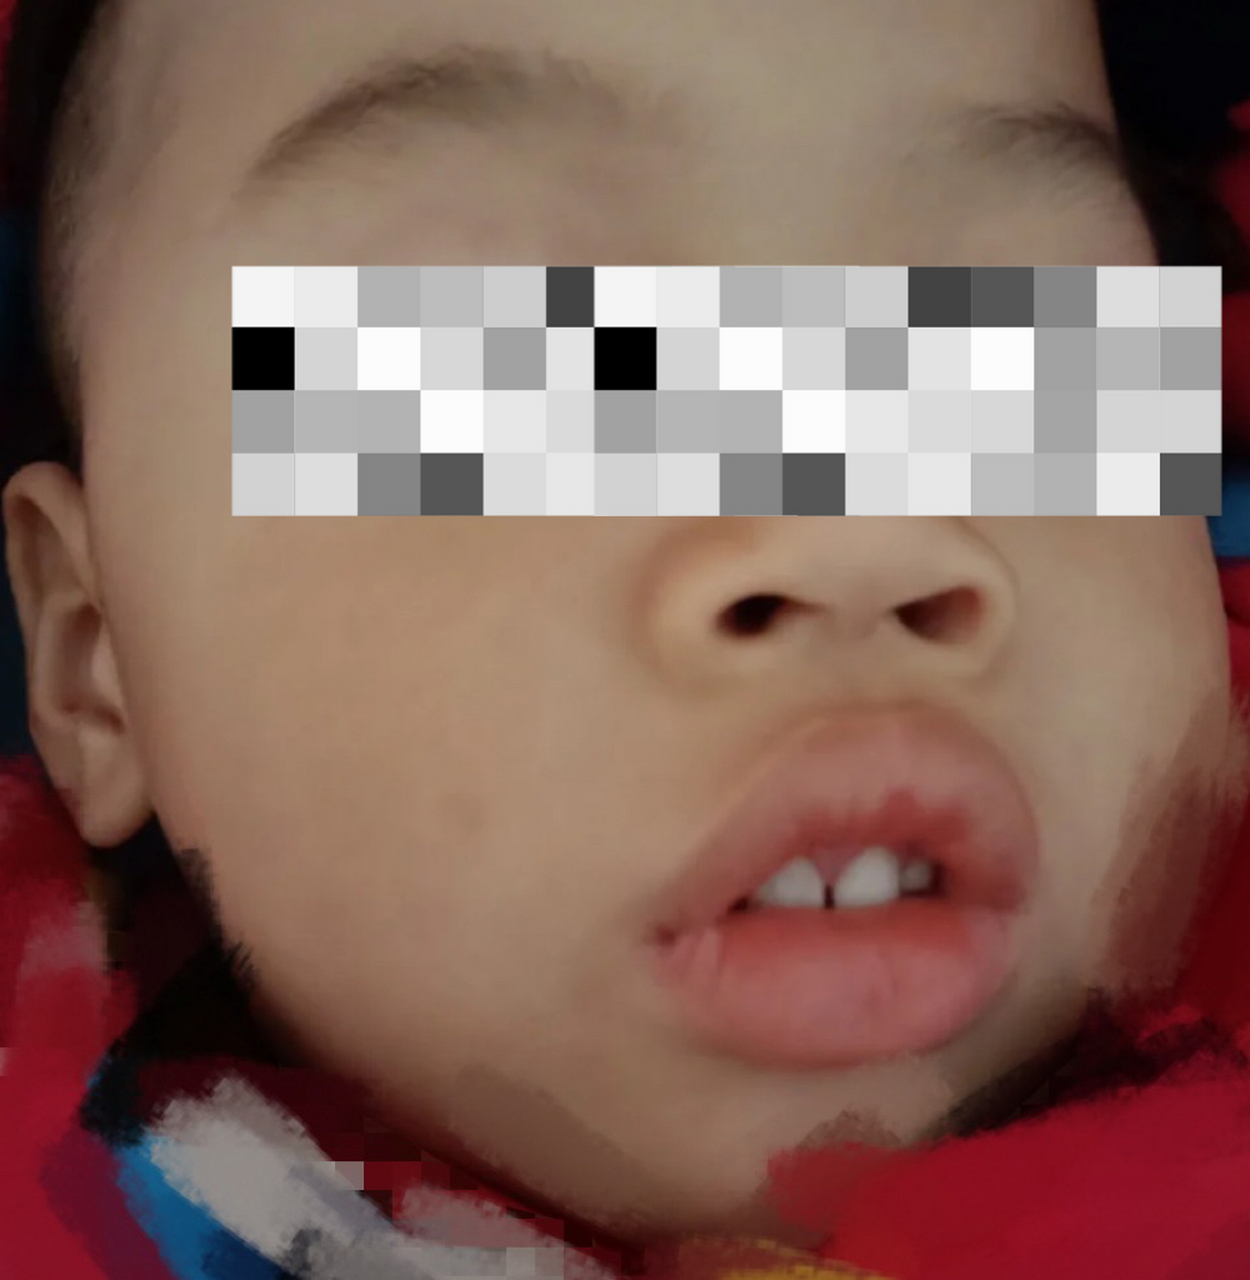 儿童鼻咽部腺样体增生图片